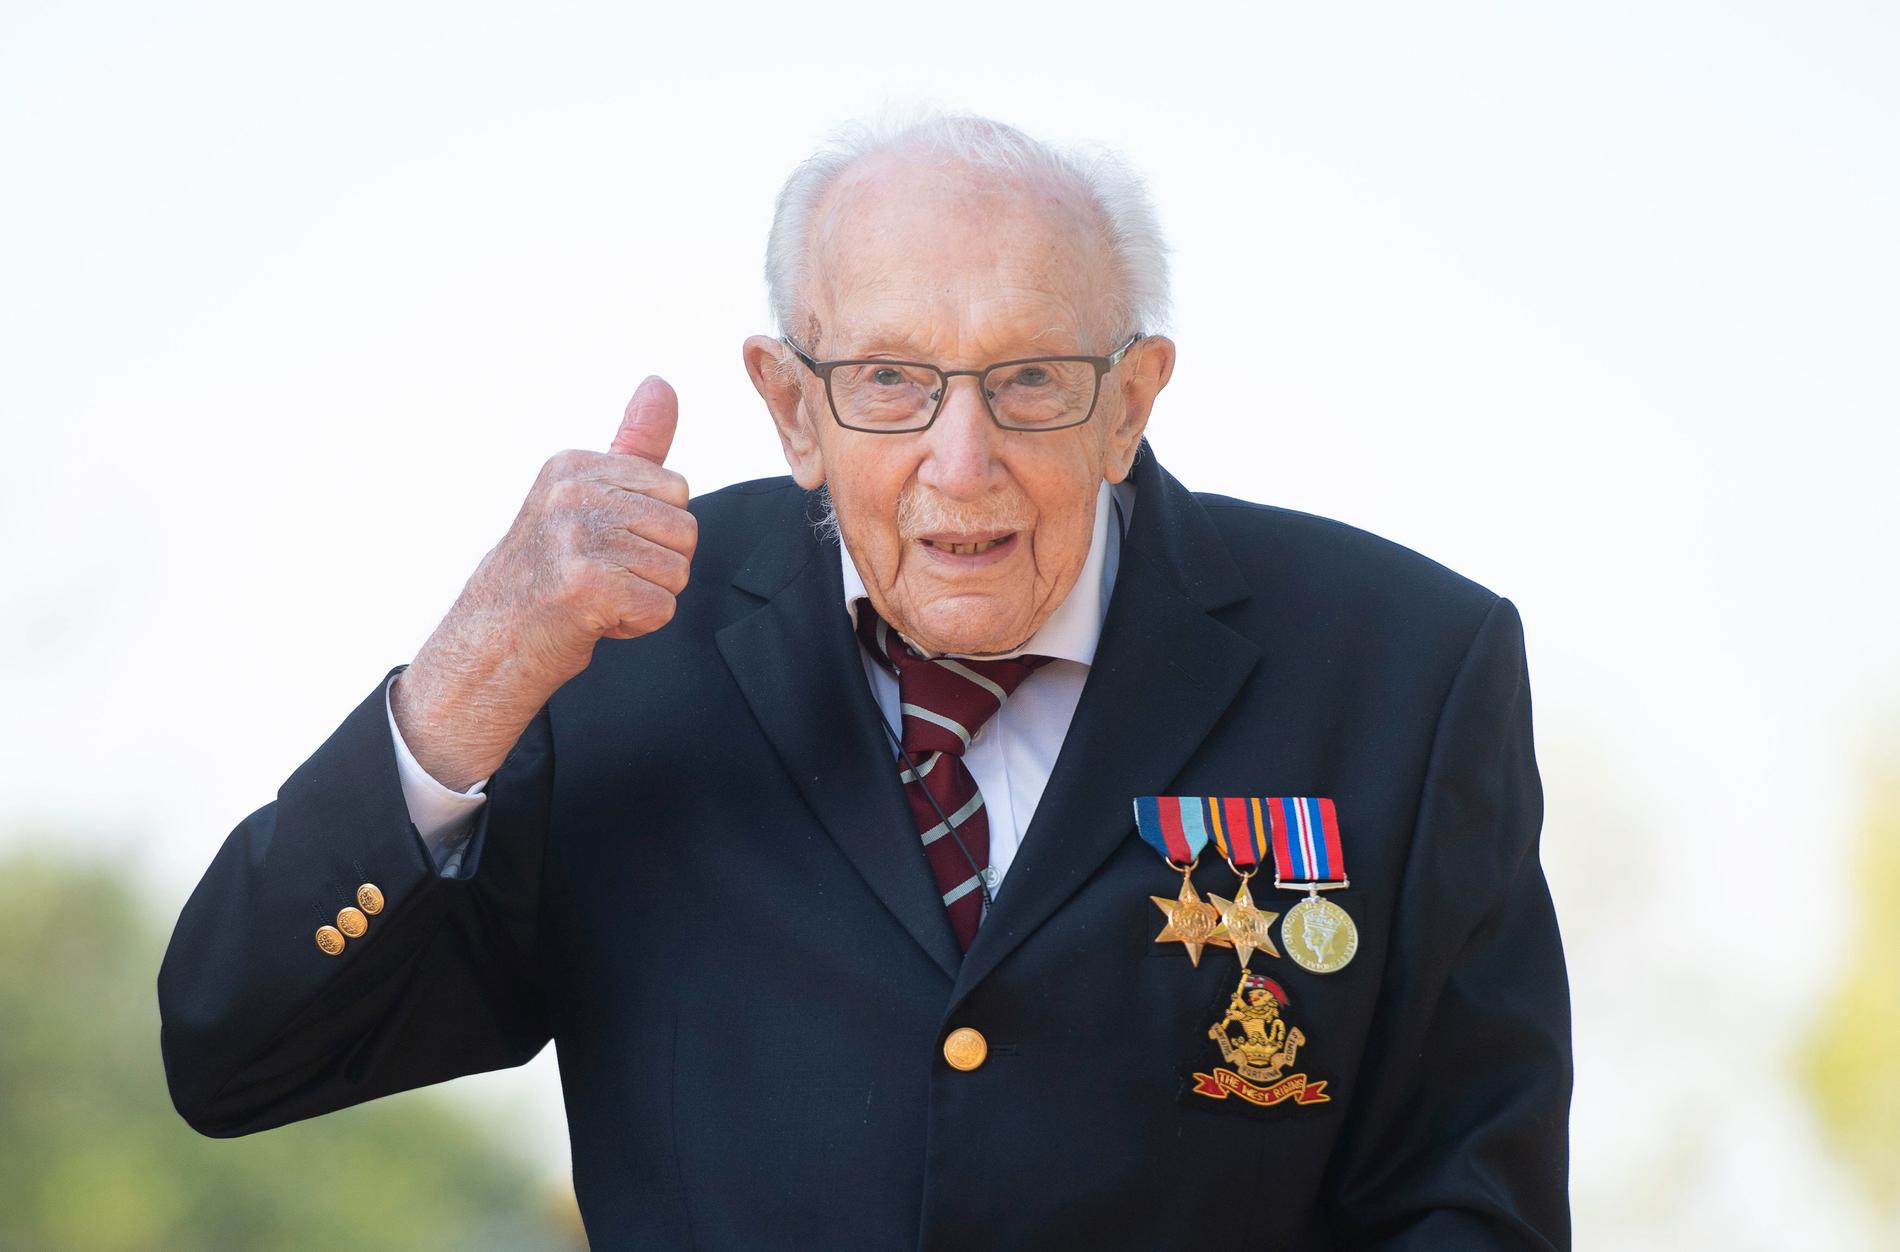 Den 99-årige krigsveteranen Tom Moore har samlat in 20 miljoner pund i coronastöd till den brittiska sjukvården.